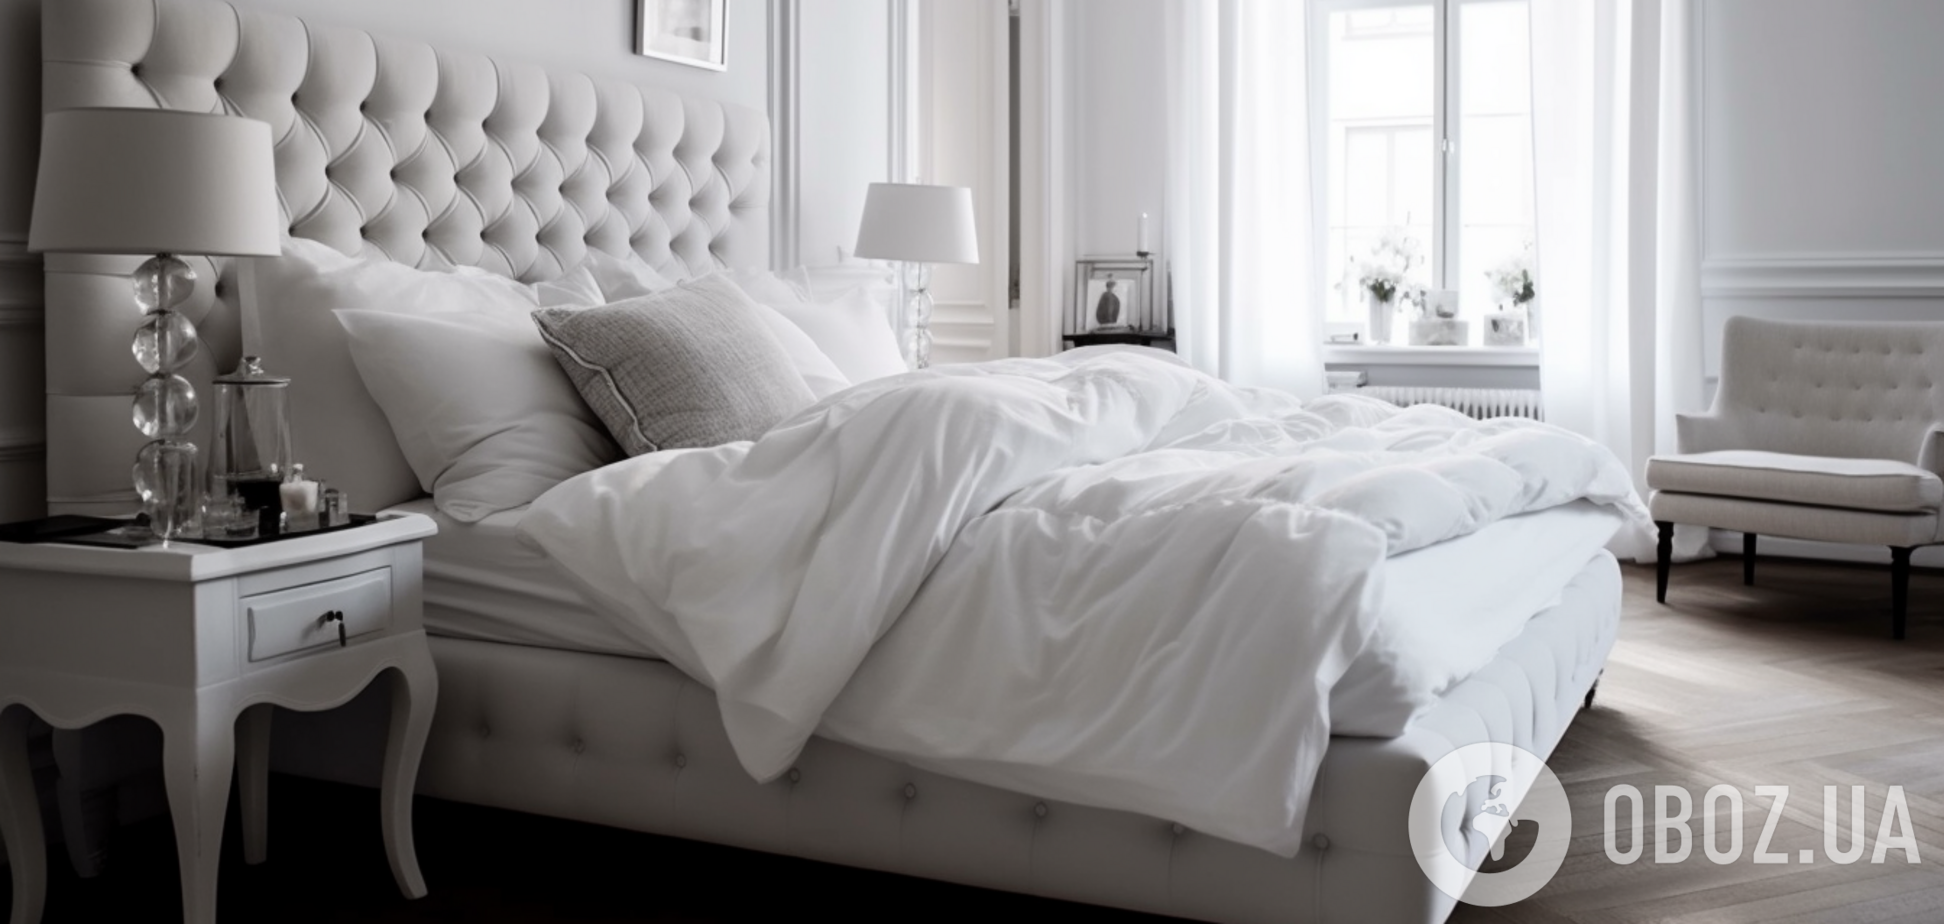 Как сделать, чтобы постель всегда пахла свежестью: простой лайфхак